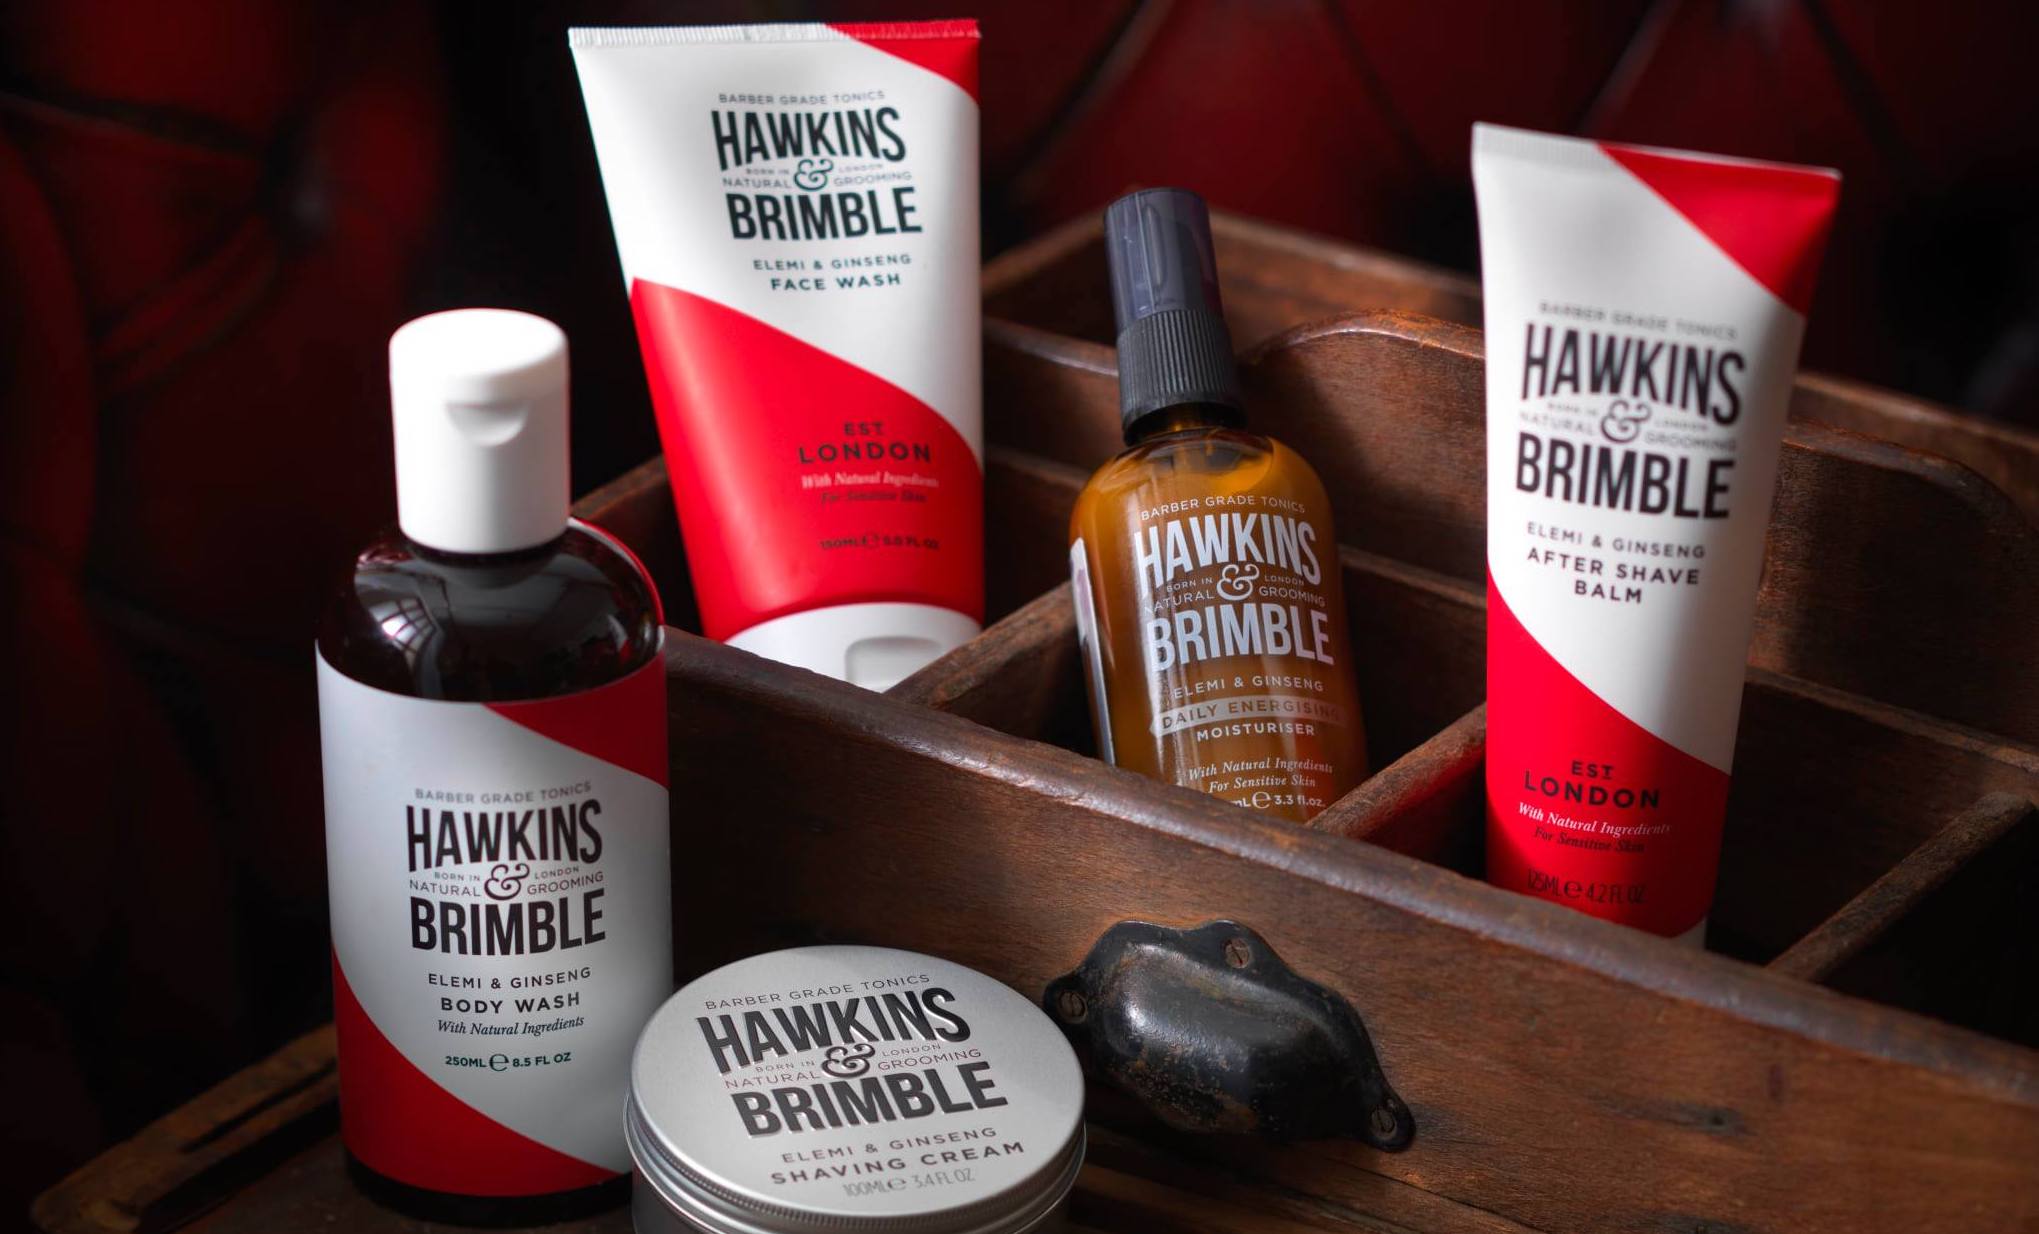 Hawkins And Brimble Products